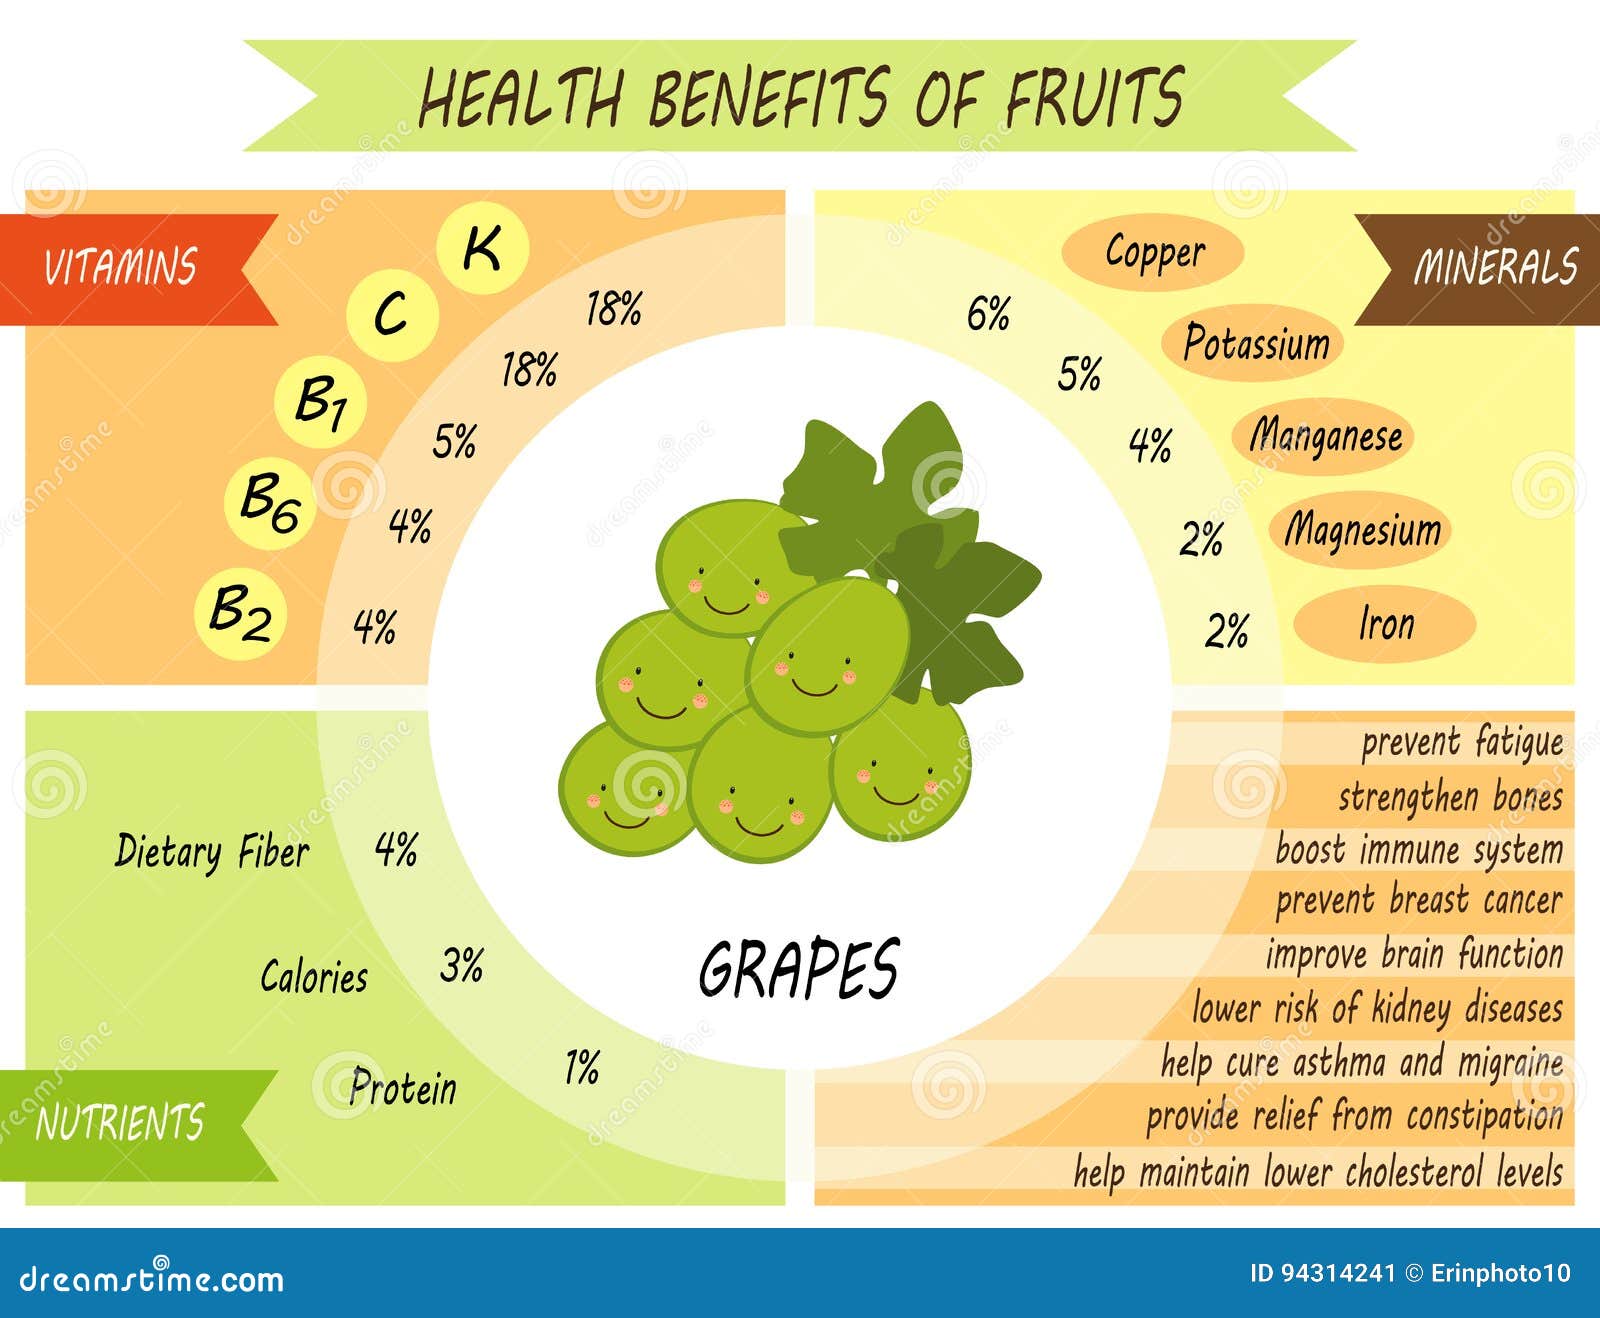 Какого витамина больше всего в винограде. Витамины в винограде. Витамины и минералы в винограде. Какие витамины в винограде. Витамины в винограде зеленом.